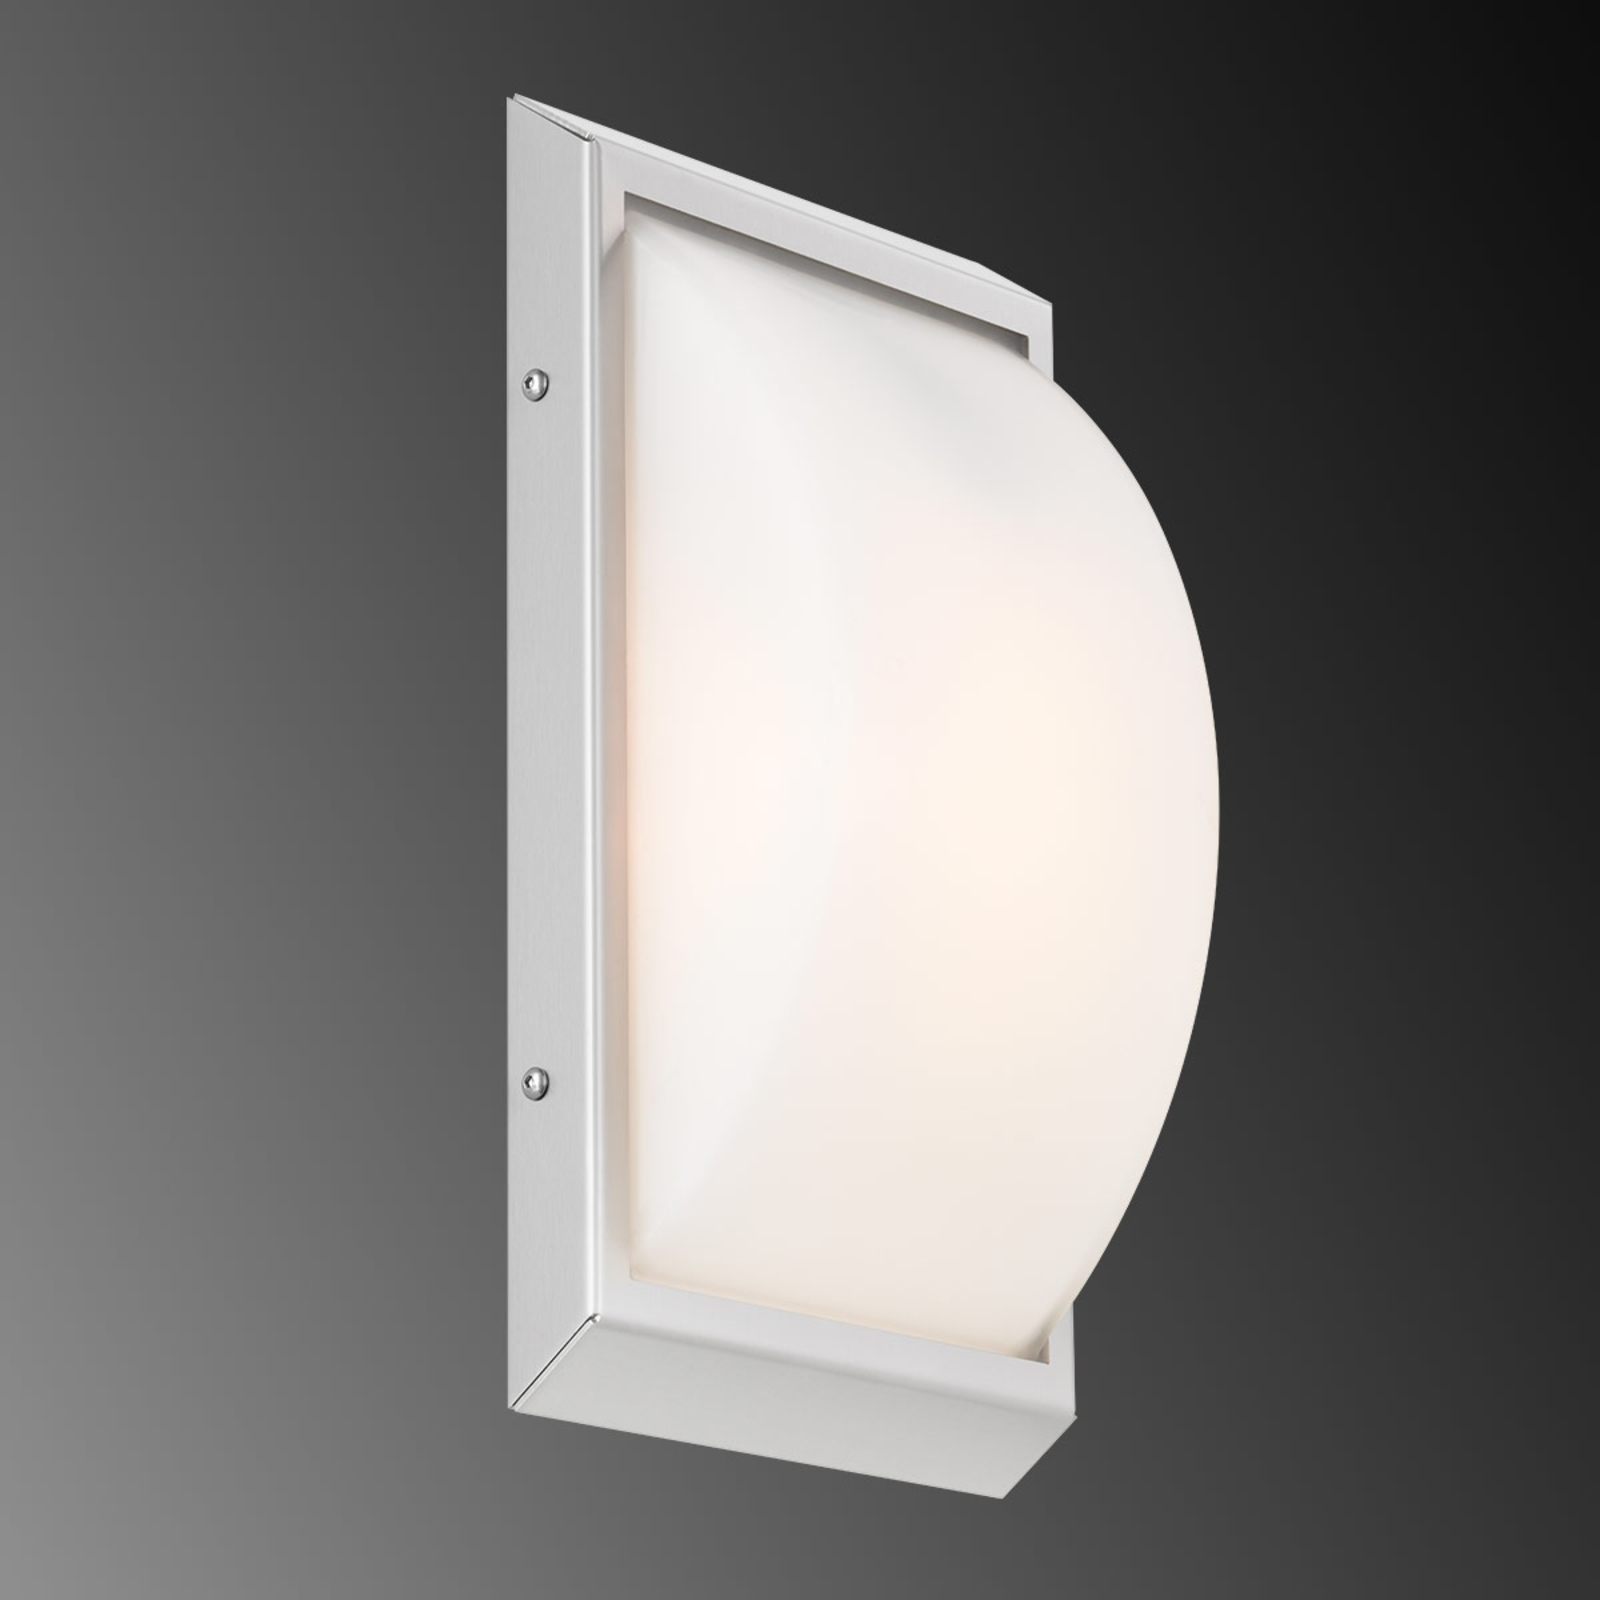 LED kültéri fali lámpa 052, fehér